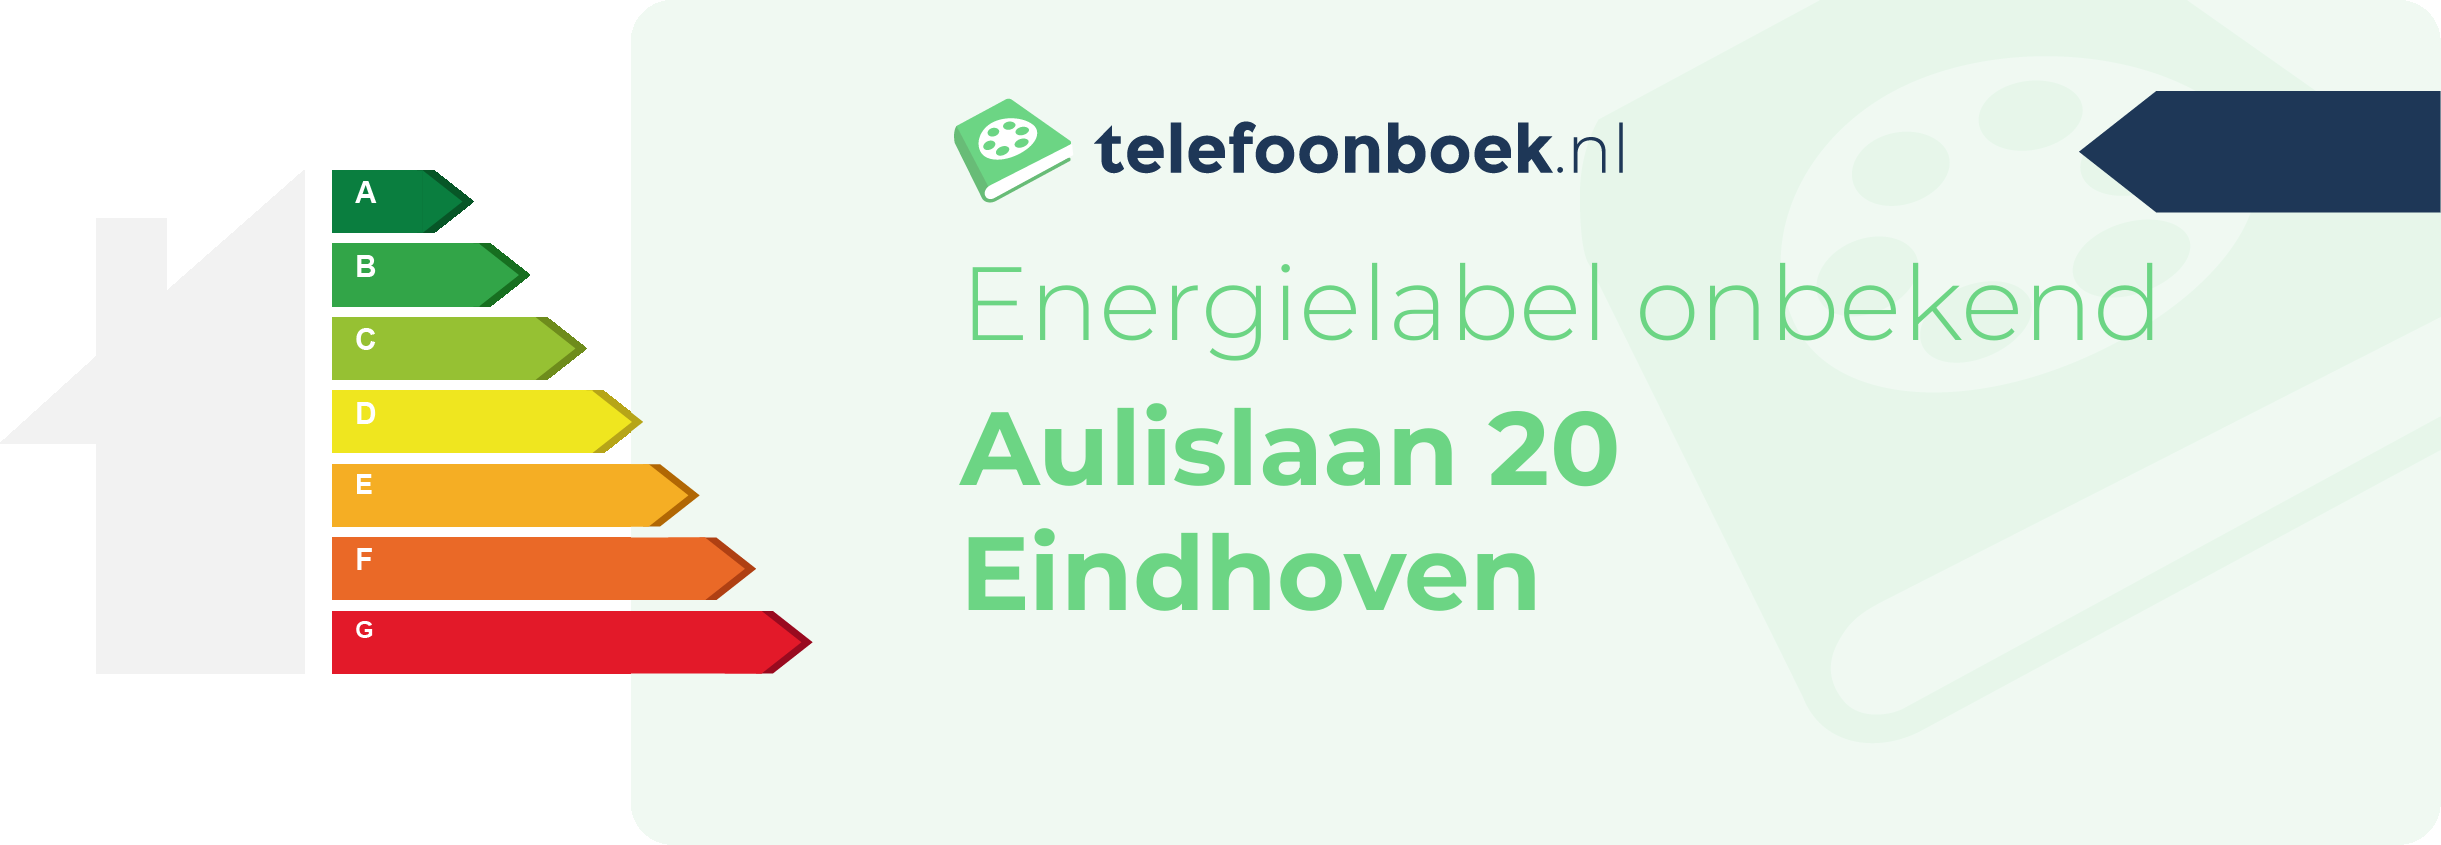 Energielabel Aulislaan 20 Eindhoven